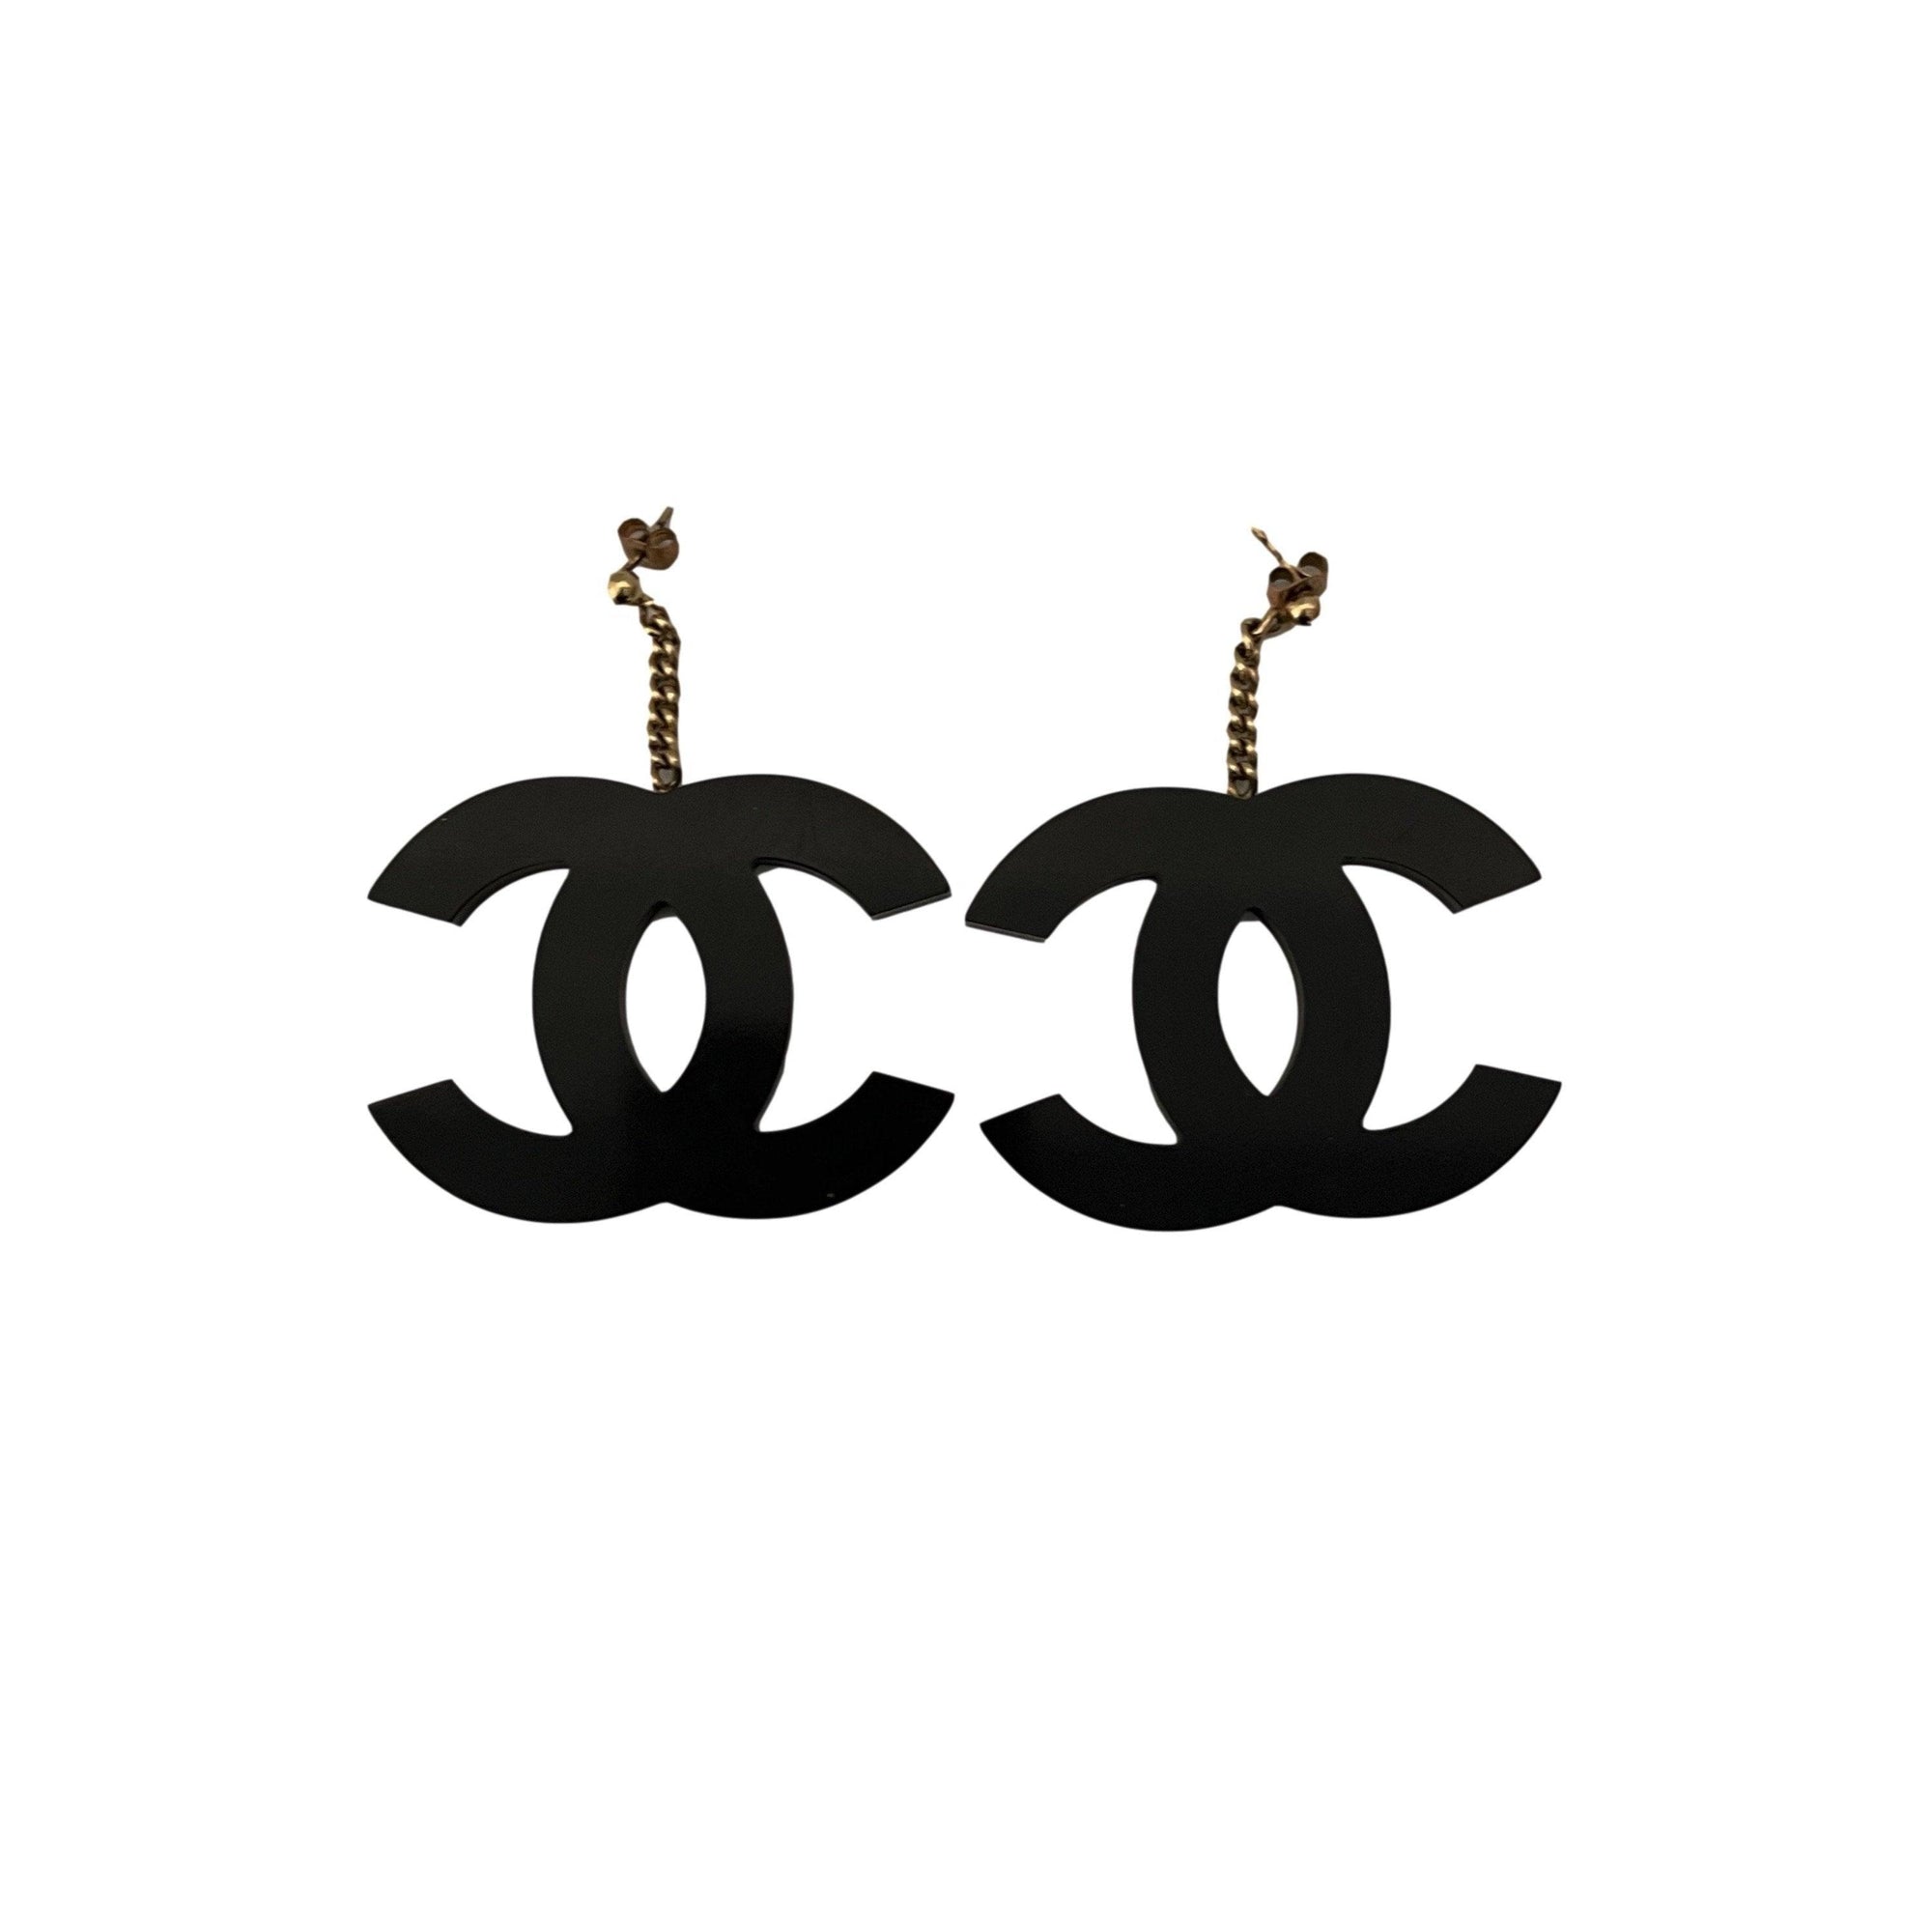 Chanel Black Acrylic Jumbo Logo Earrings - Jewelry